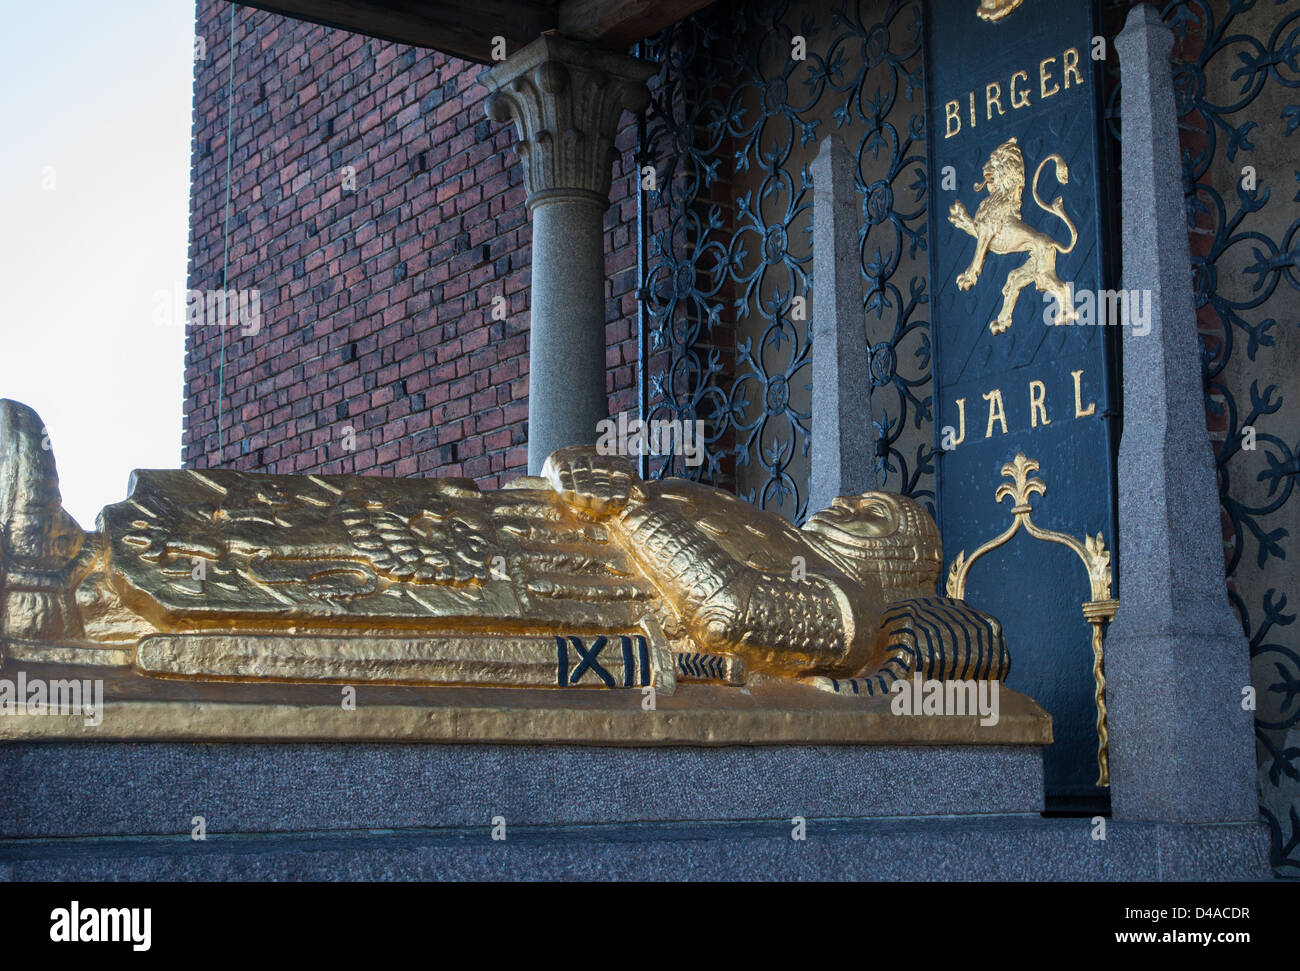 Il cenotafio di Birger Jarl al Municipio di Stoccolma in Svezia Foto Stock